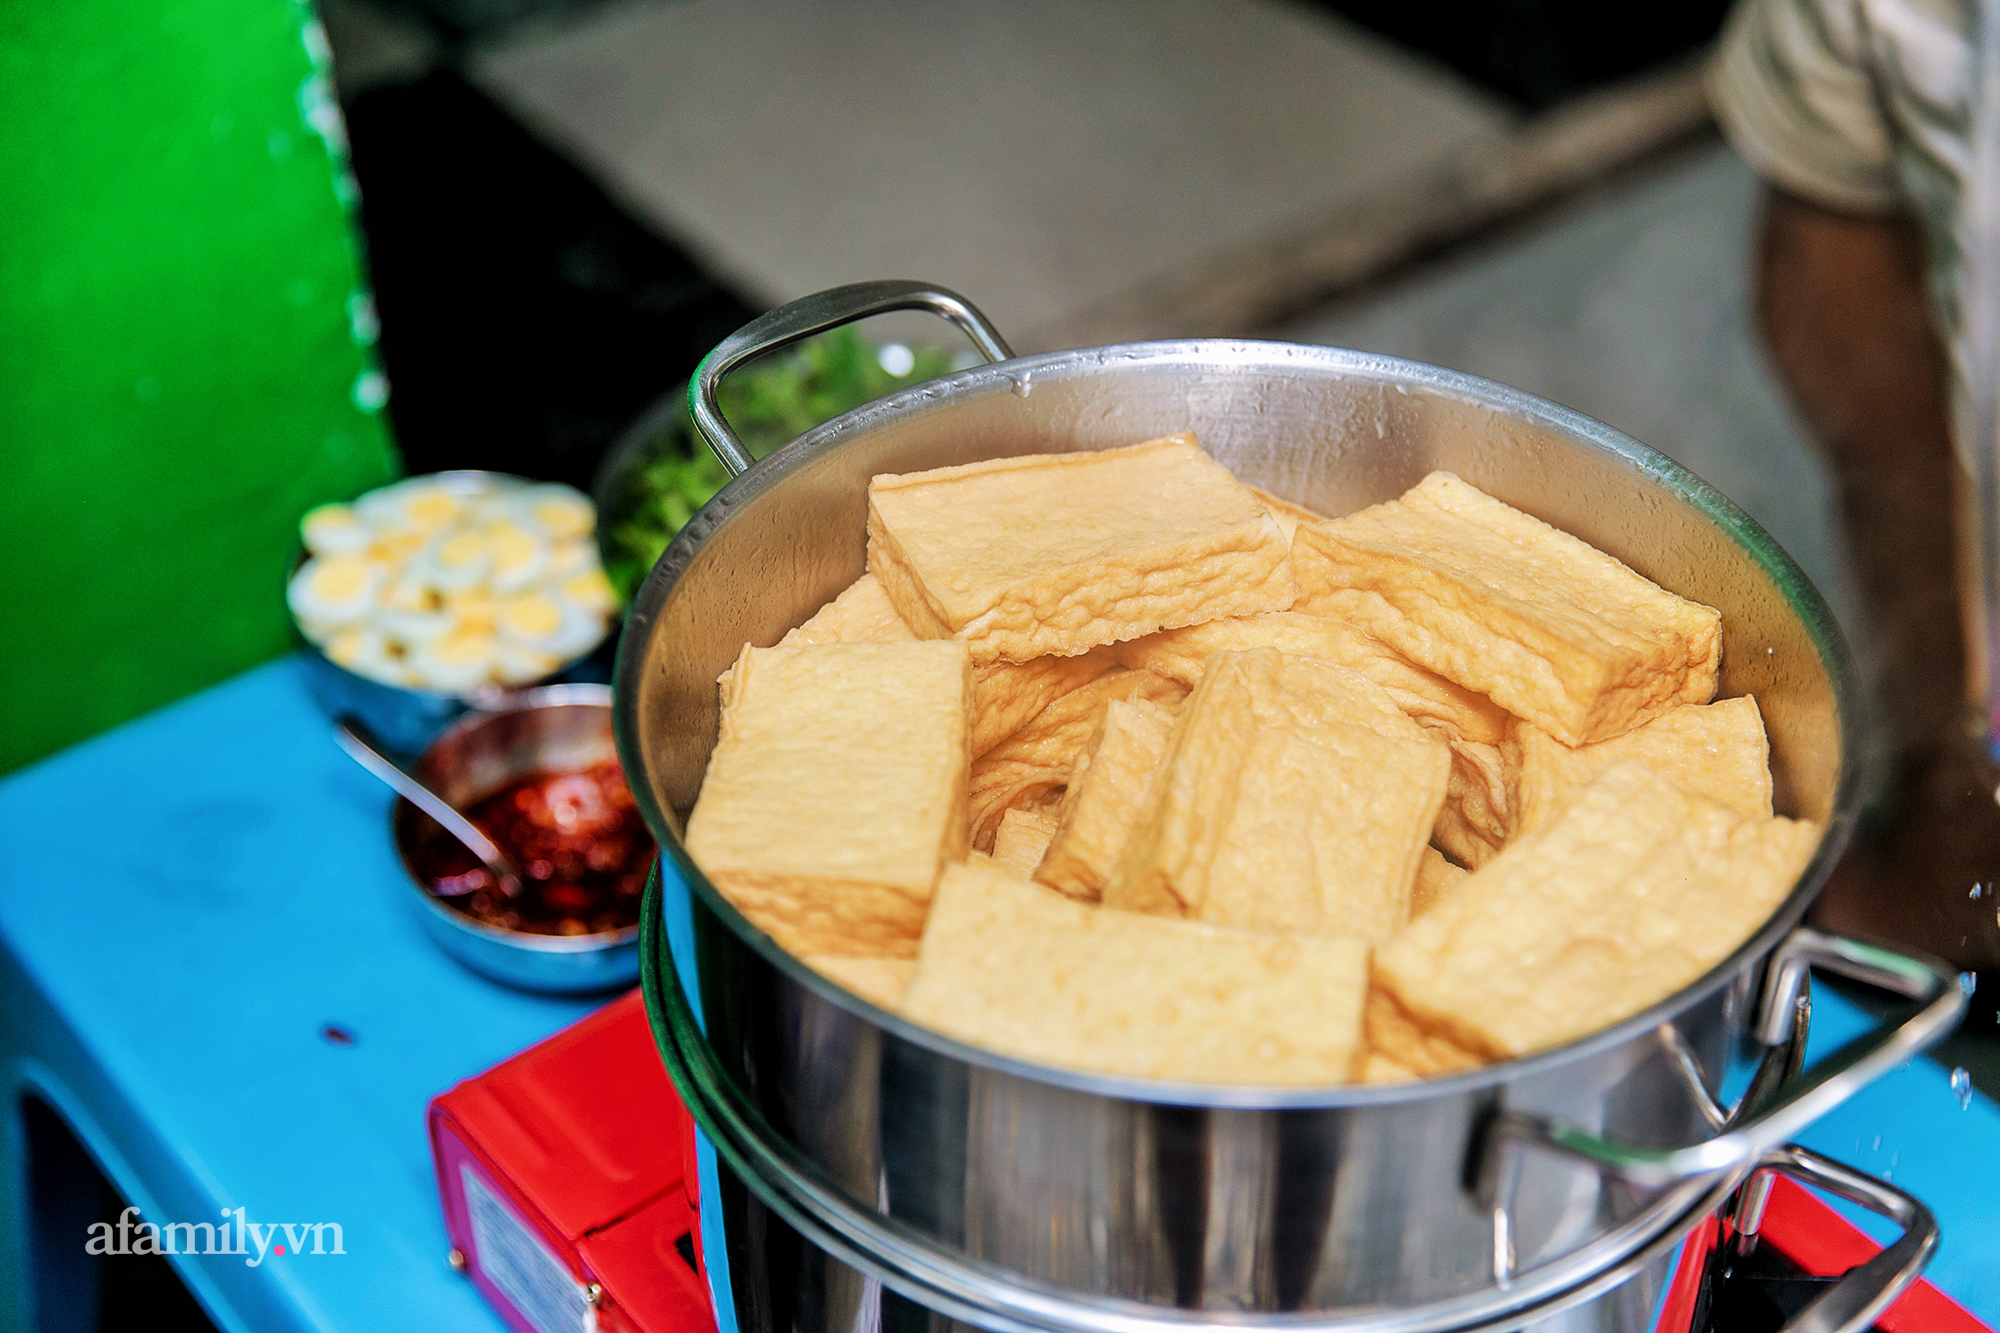 Đậu hủ kẹp rau răm - món ăn siêu lạ khiến người đàn ông từ vô danh ở Châu Đốc bỗng trở nên nổi tiếng, nay được cả Sài Gòn săn lùng ăn thử để biết vì sao có thể 